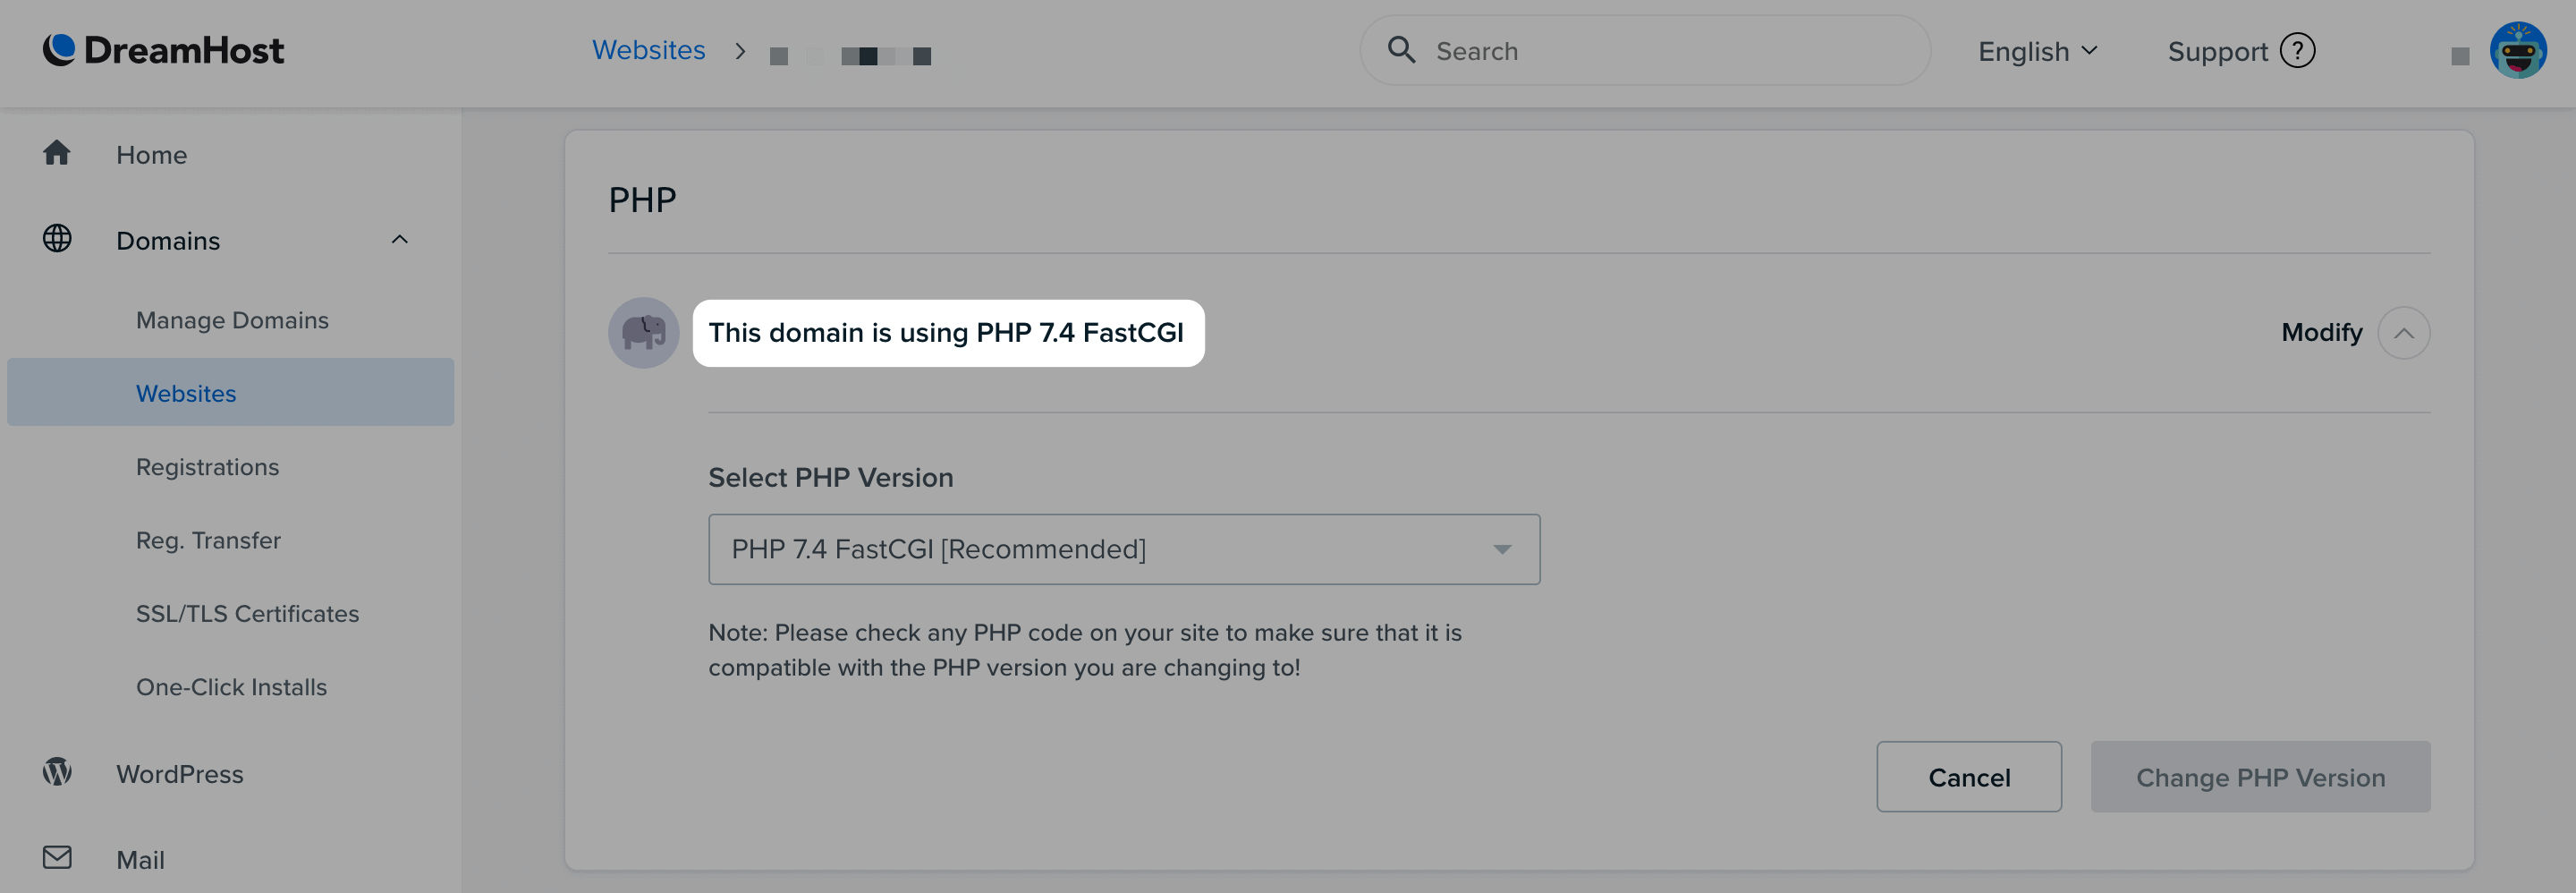 La versión actual de PHP en DreamHost.